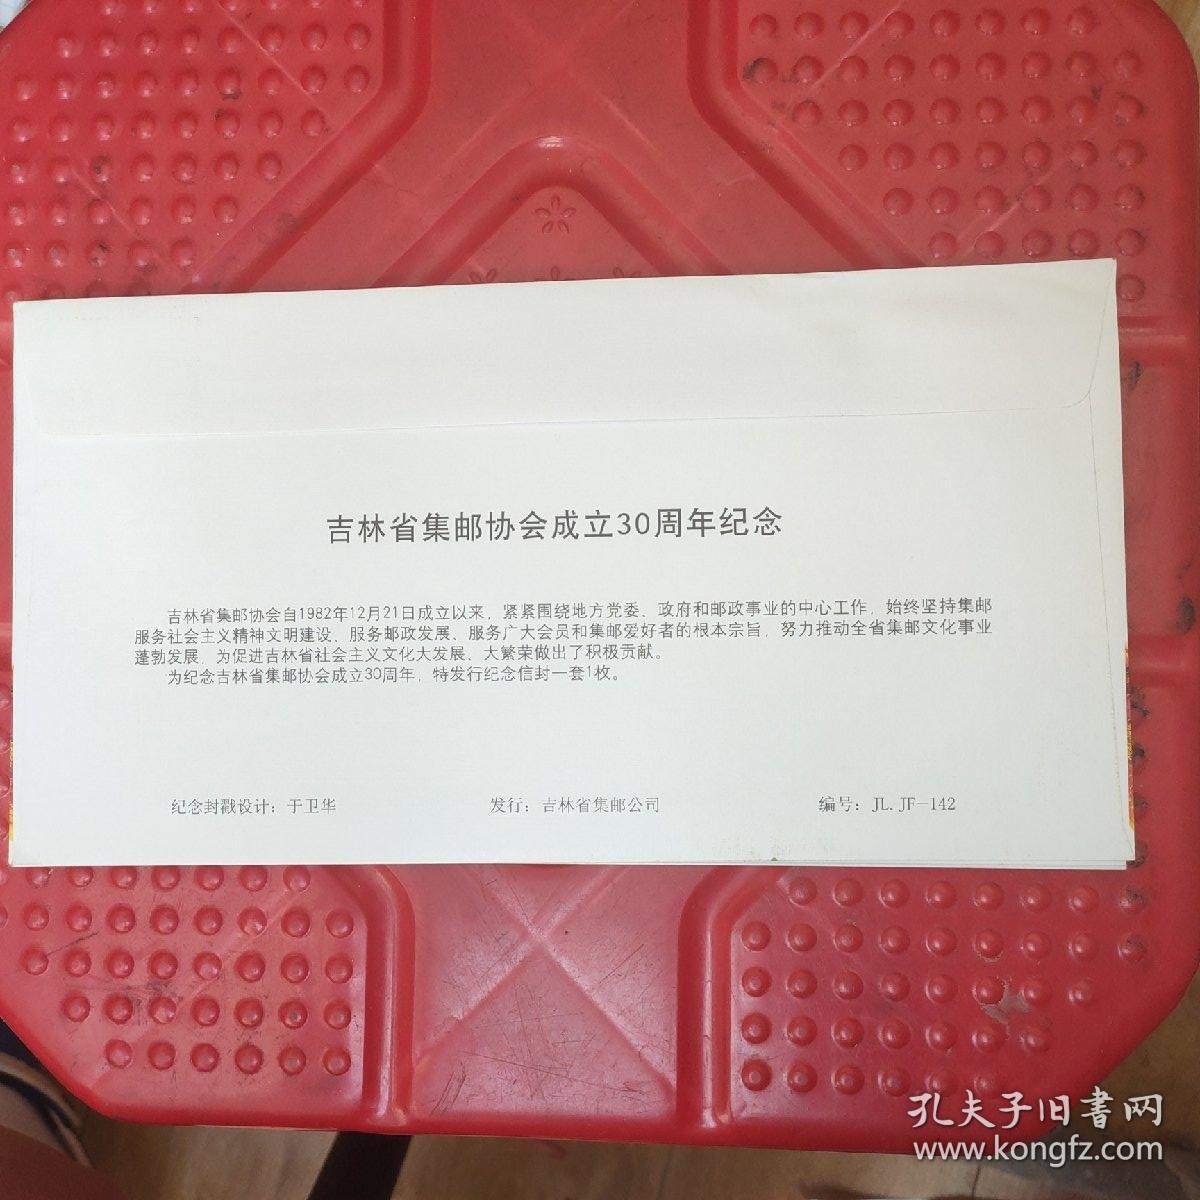 吉林省集邮协会成立三十周年纪念封